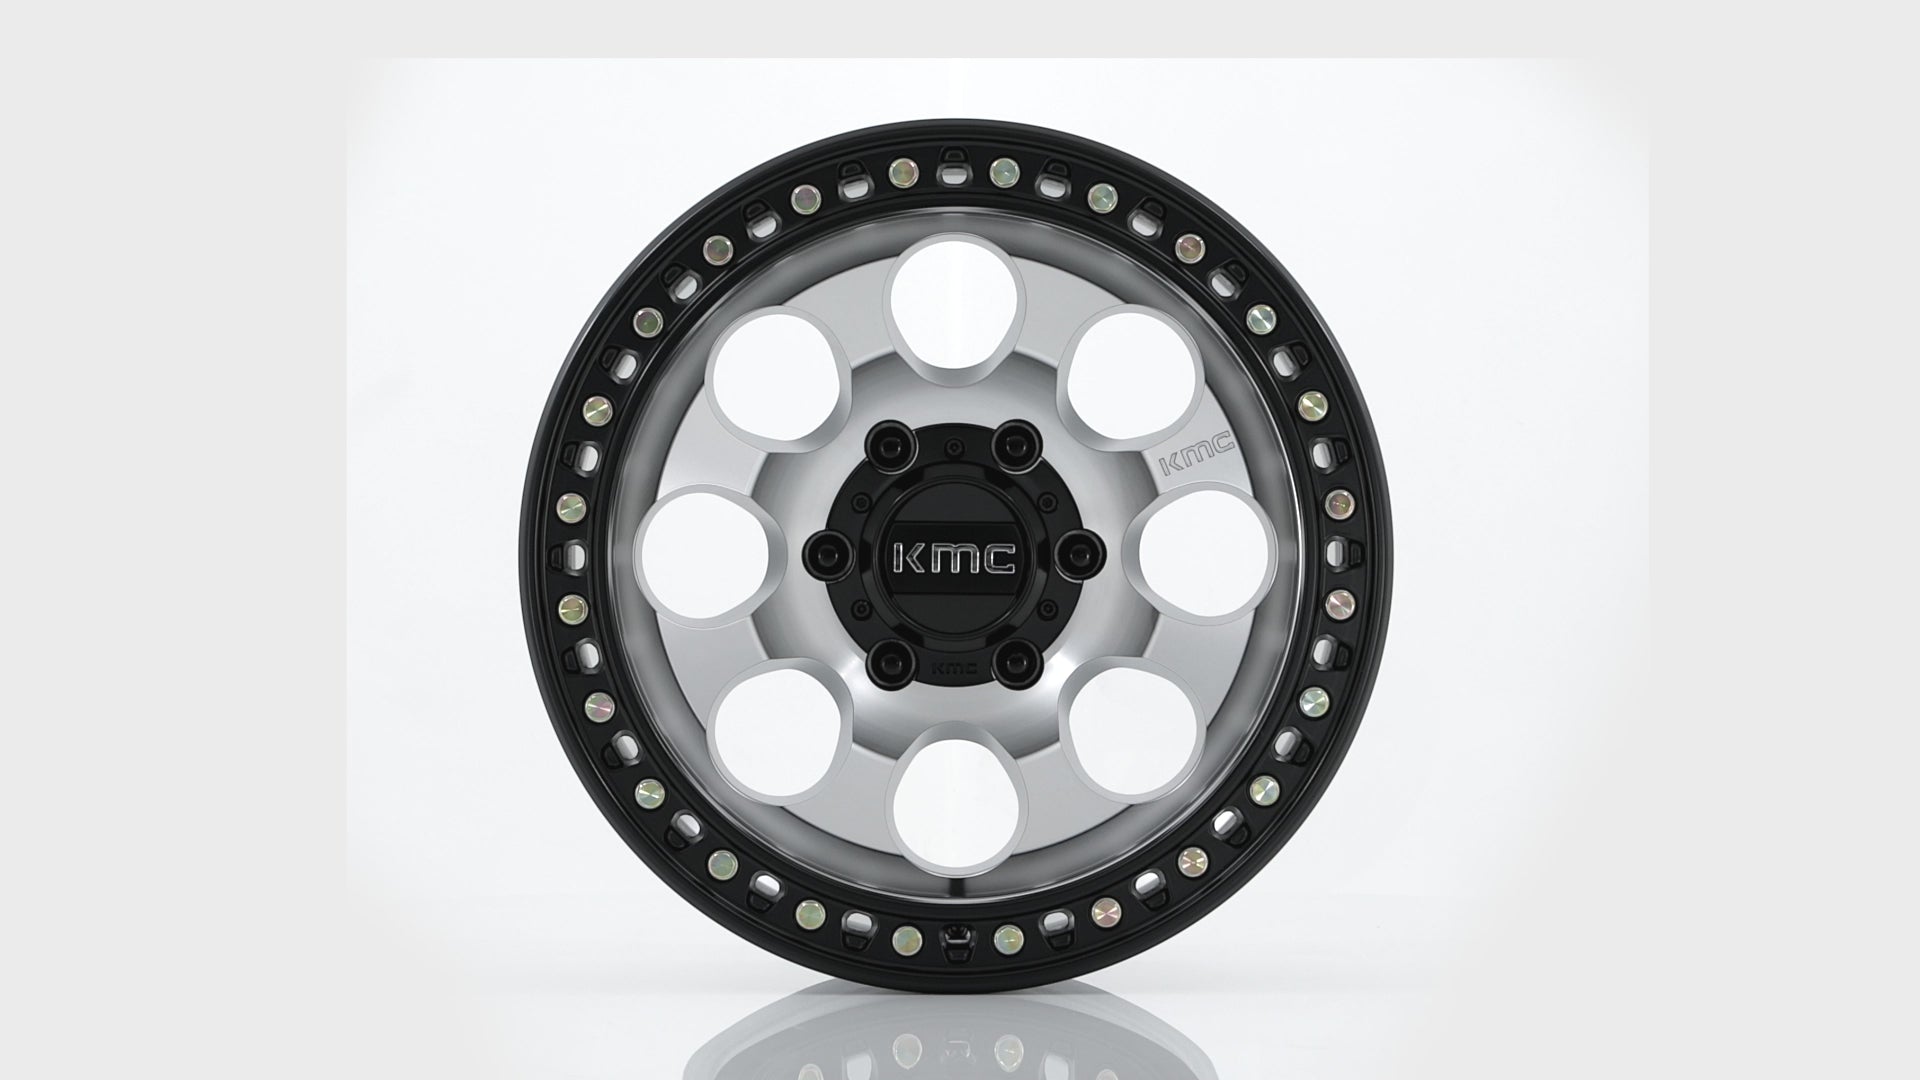 KMC ホイール KM550 RIOT SBL | MACHINED W/ SATIN BLACK LIP – アメリカンインテイク  USカスタムパーツショップ